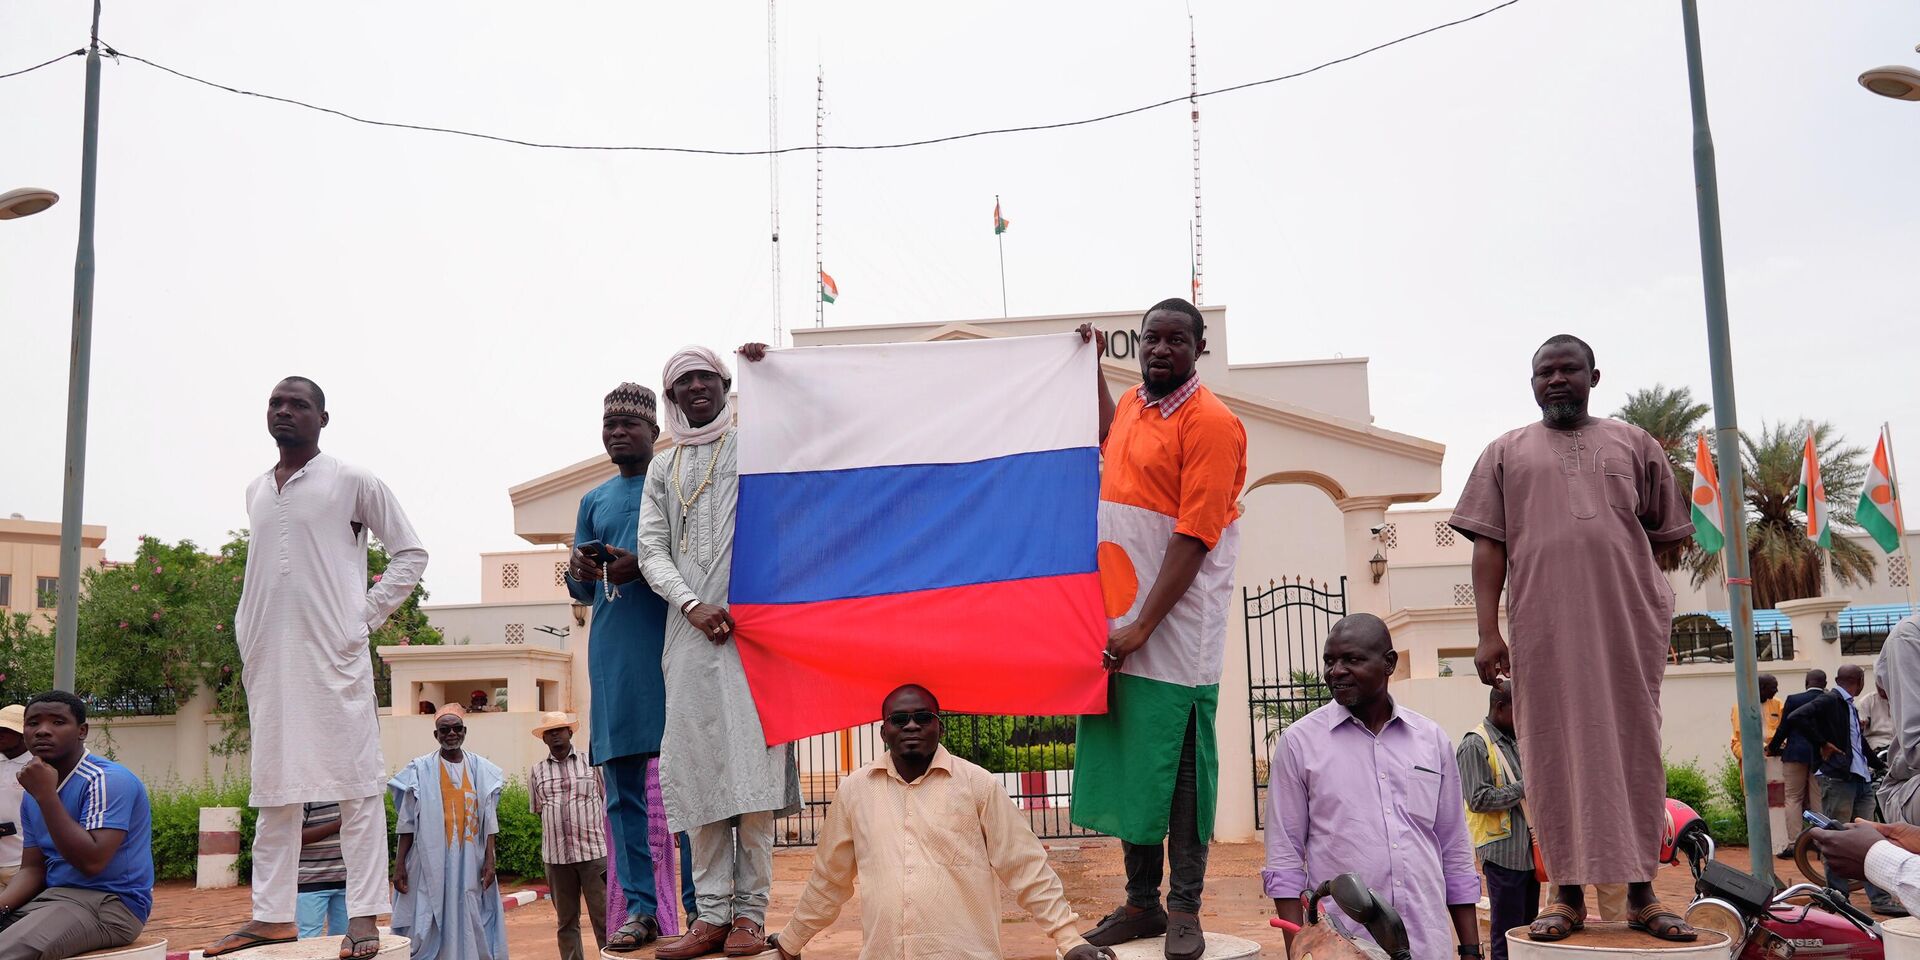 Участники демонстрации в Ниамее, Нигер. 27 июля 2023 года - ИноСМИ, 1920, 17.08.2023